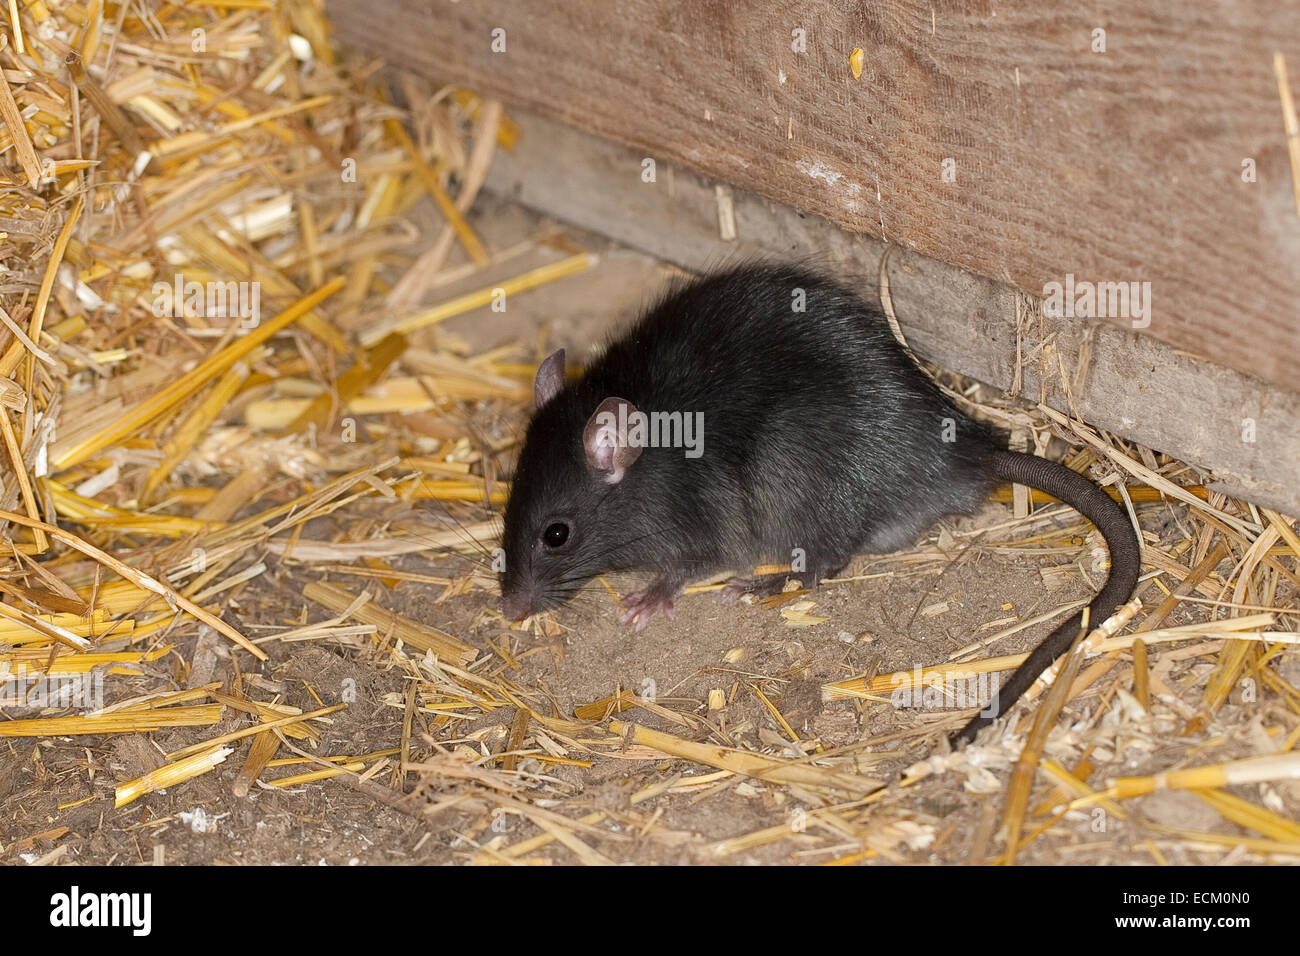 Rat noir, rat noir, rat, rat bateau maison, rats, Hausratte Haus-Ratte, Ratte, Ratten,, Rattus rattus, le rat noir, rat des greniers Banque D'Images